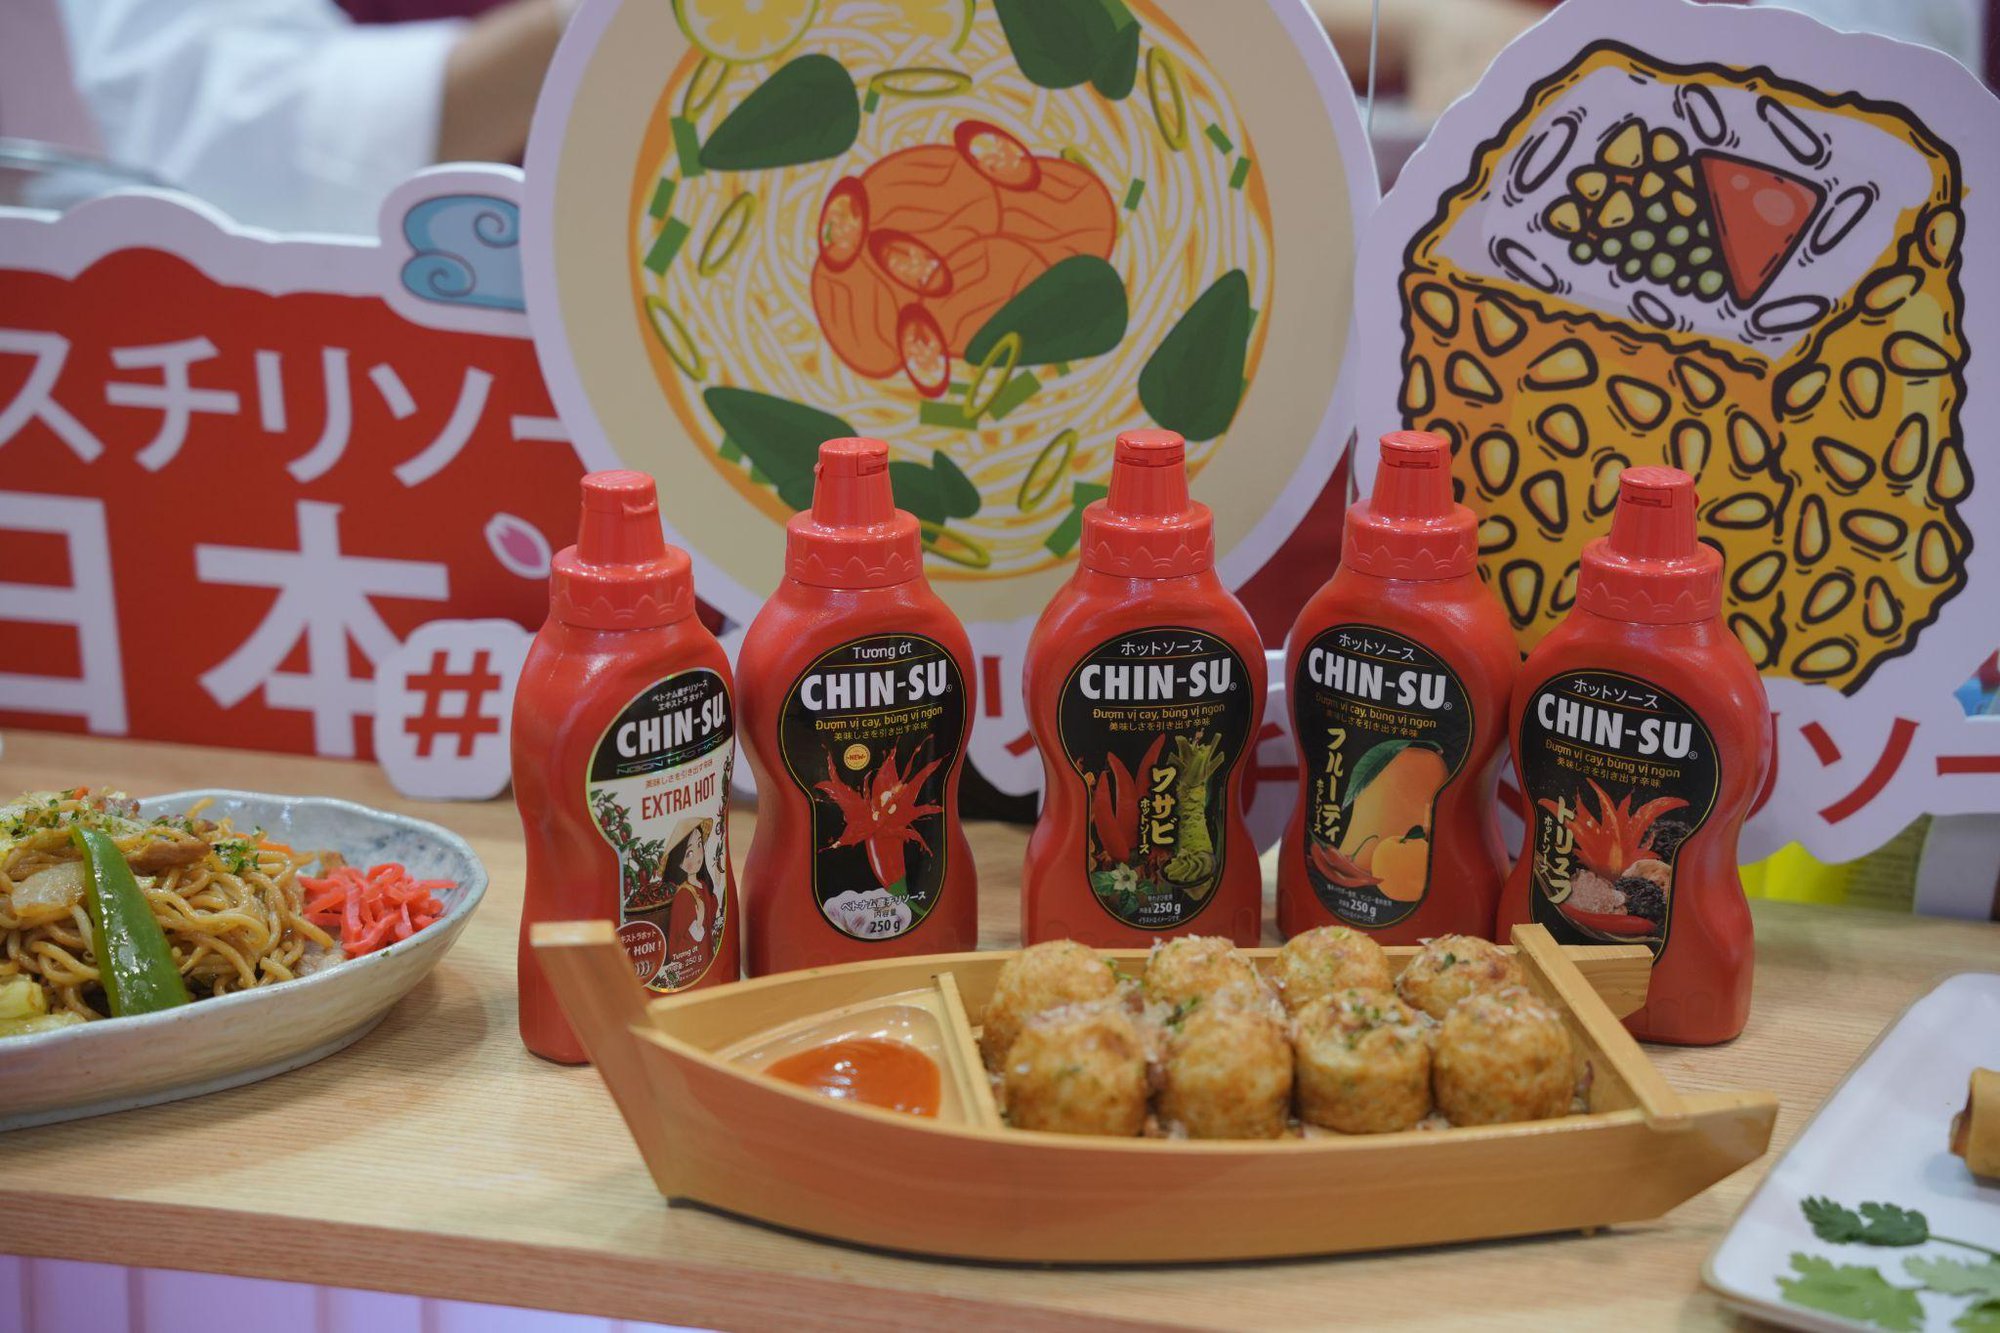 Tương ớt Chin-su gây ấn tượng mạnh tại Nhật Bản, ra mắt 5 hương vị mới - Ảnh 2.